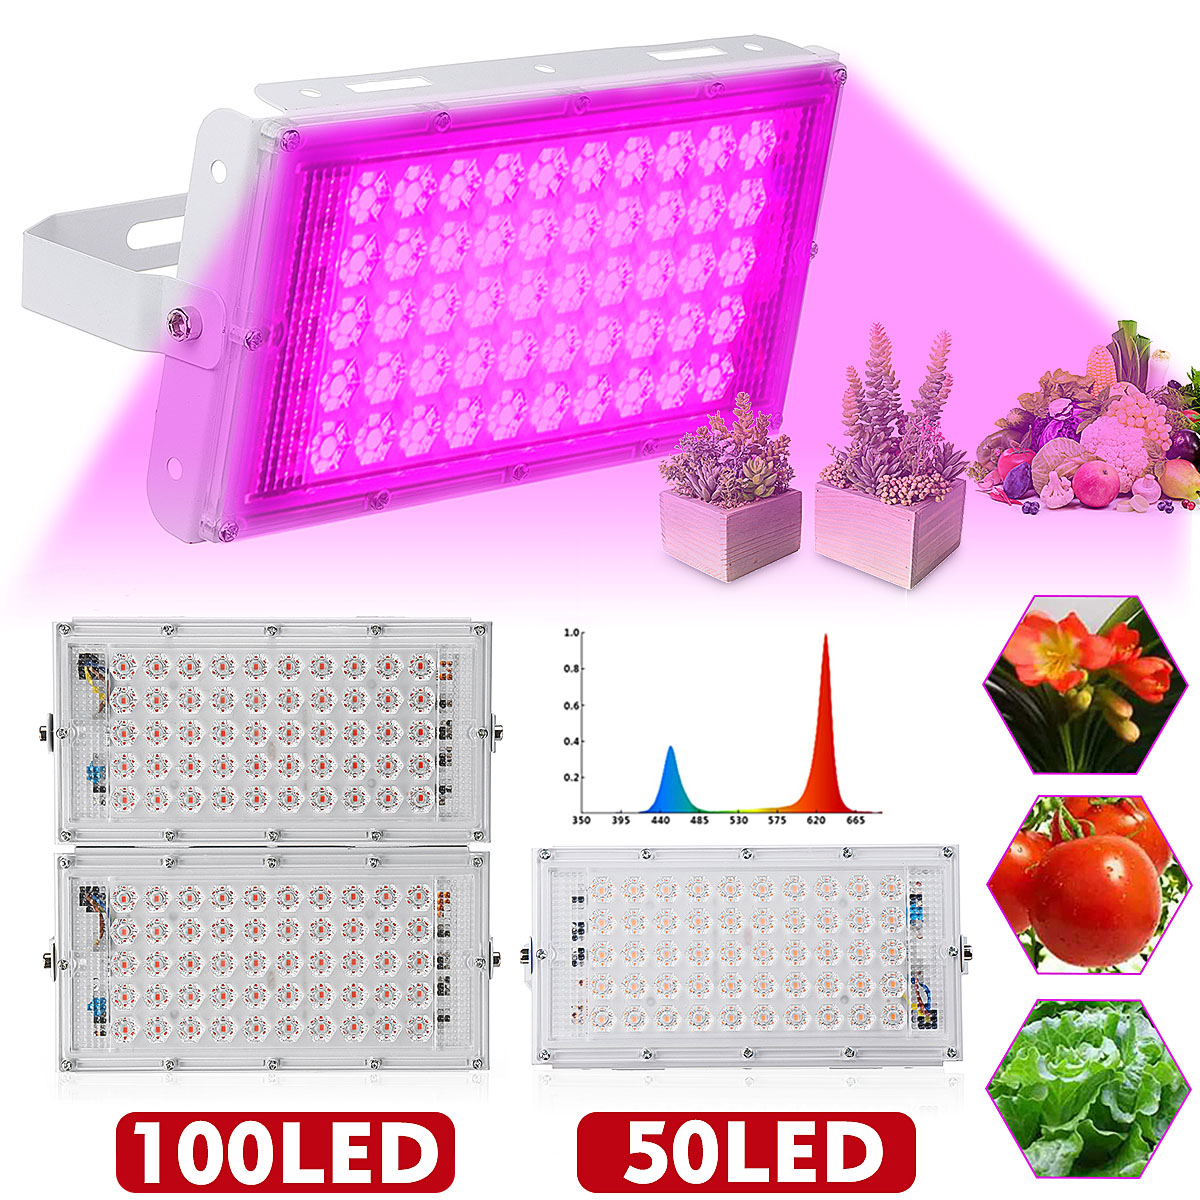 Full-Spectrum-100-LED-Grow-Light-Flood-Lighting-Lamp-for-Plants-Veg-and-Flower-1627785-1